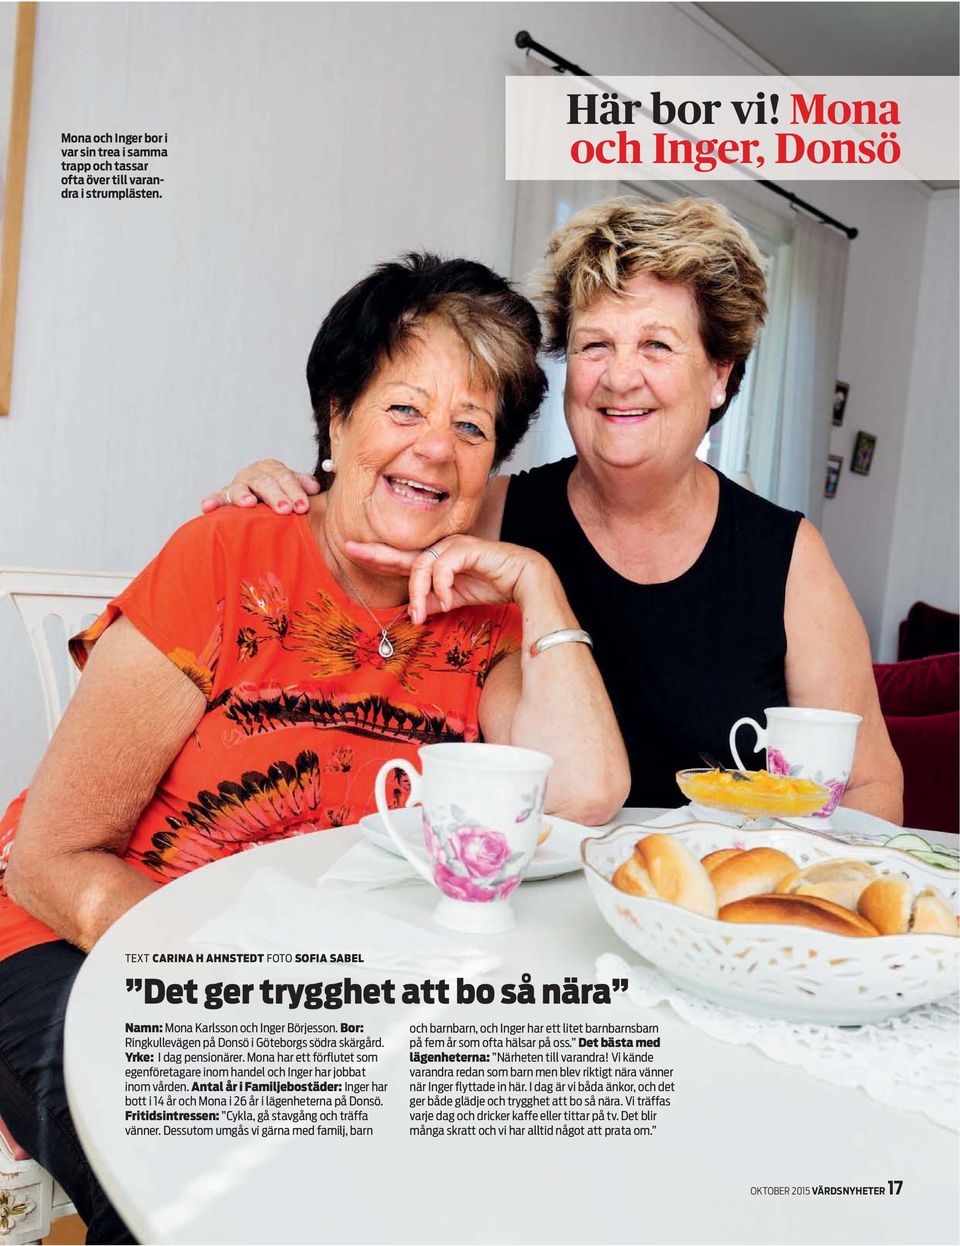 Mona har ett förflutet som egenföretagare inom handel och Inger har jobbat inom vården. ntal år i Familjebostäder: Inger har bott i 14 år och Mona i 26 år i lägenheterna på Donsö.